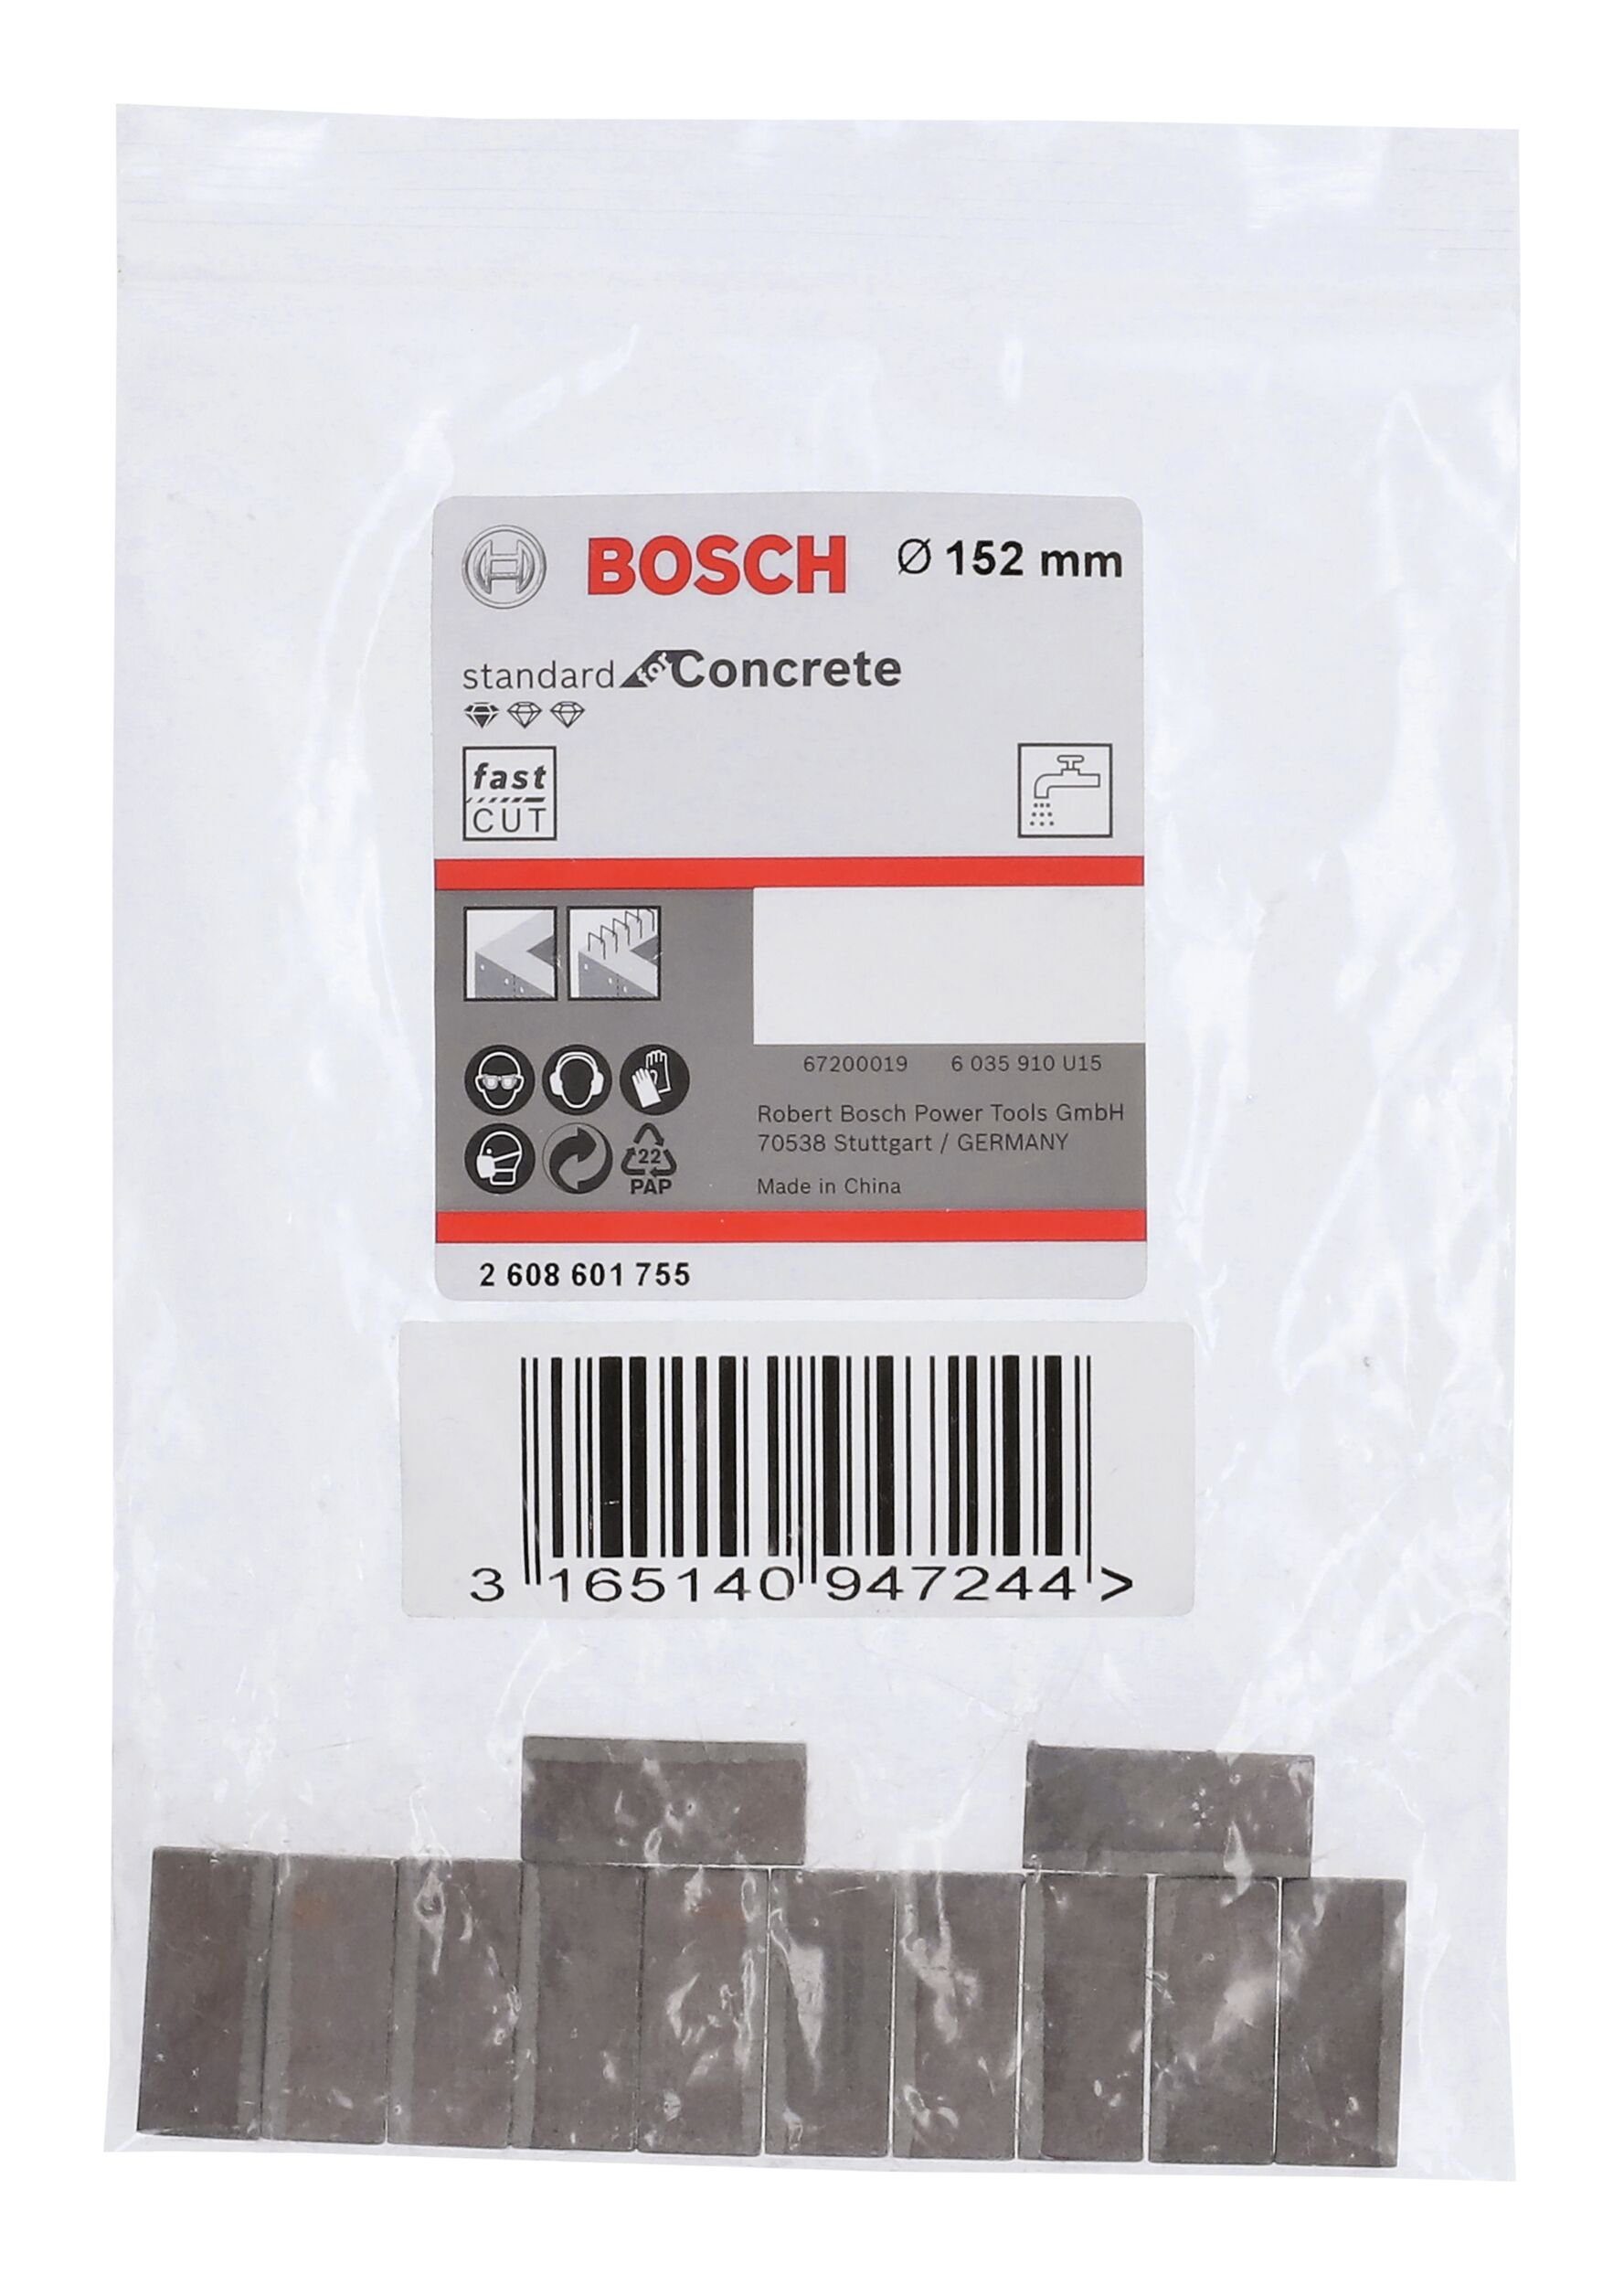 BOSCH f. - Concrete Segmente 10 Diamantbohrkrone for Standard mm Segmente 12 Bohrkrone,